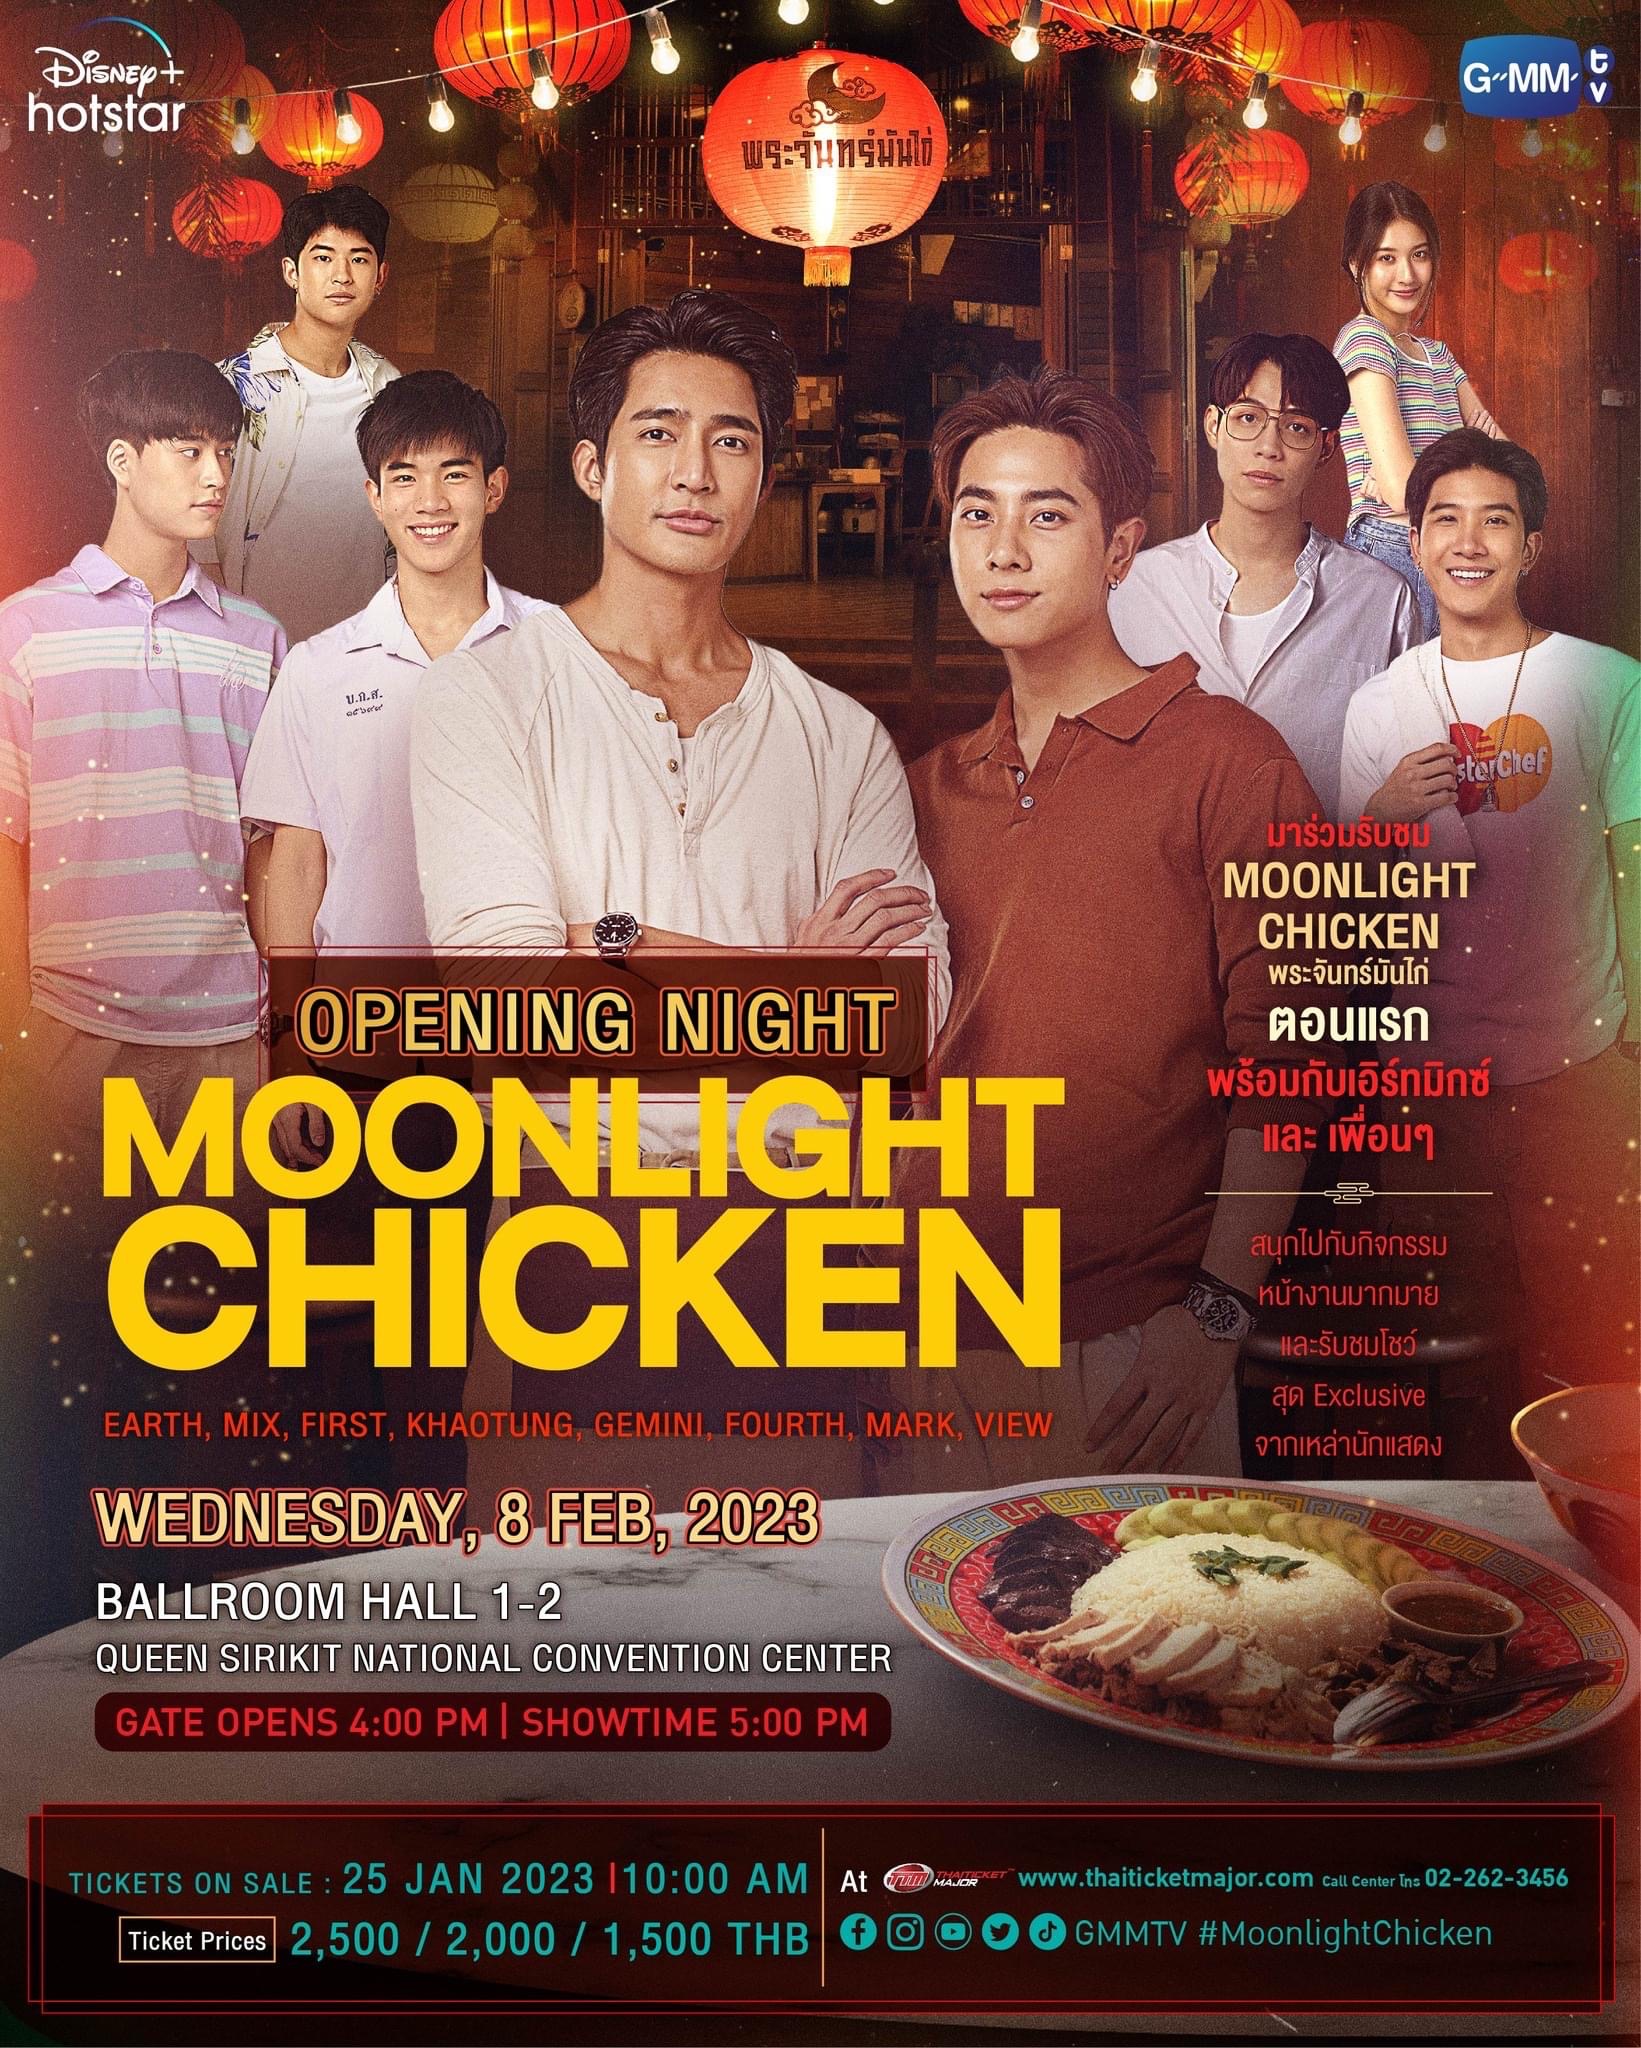 Opening Night Moonlight Chicken